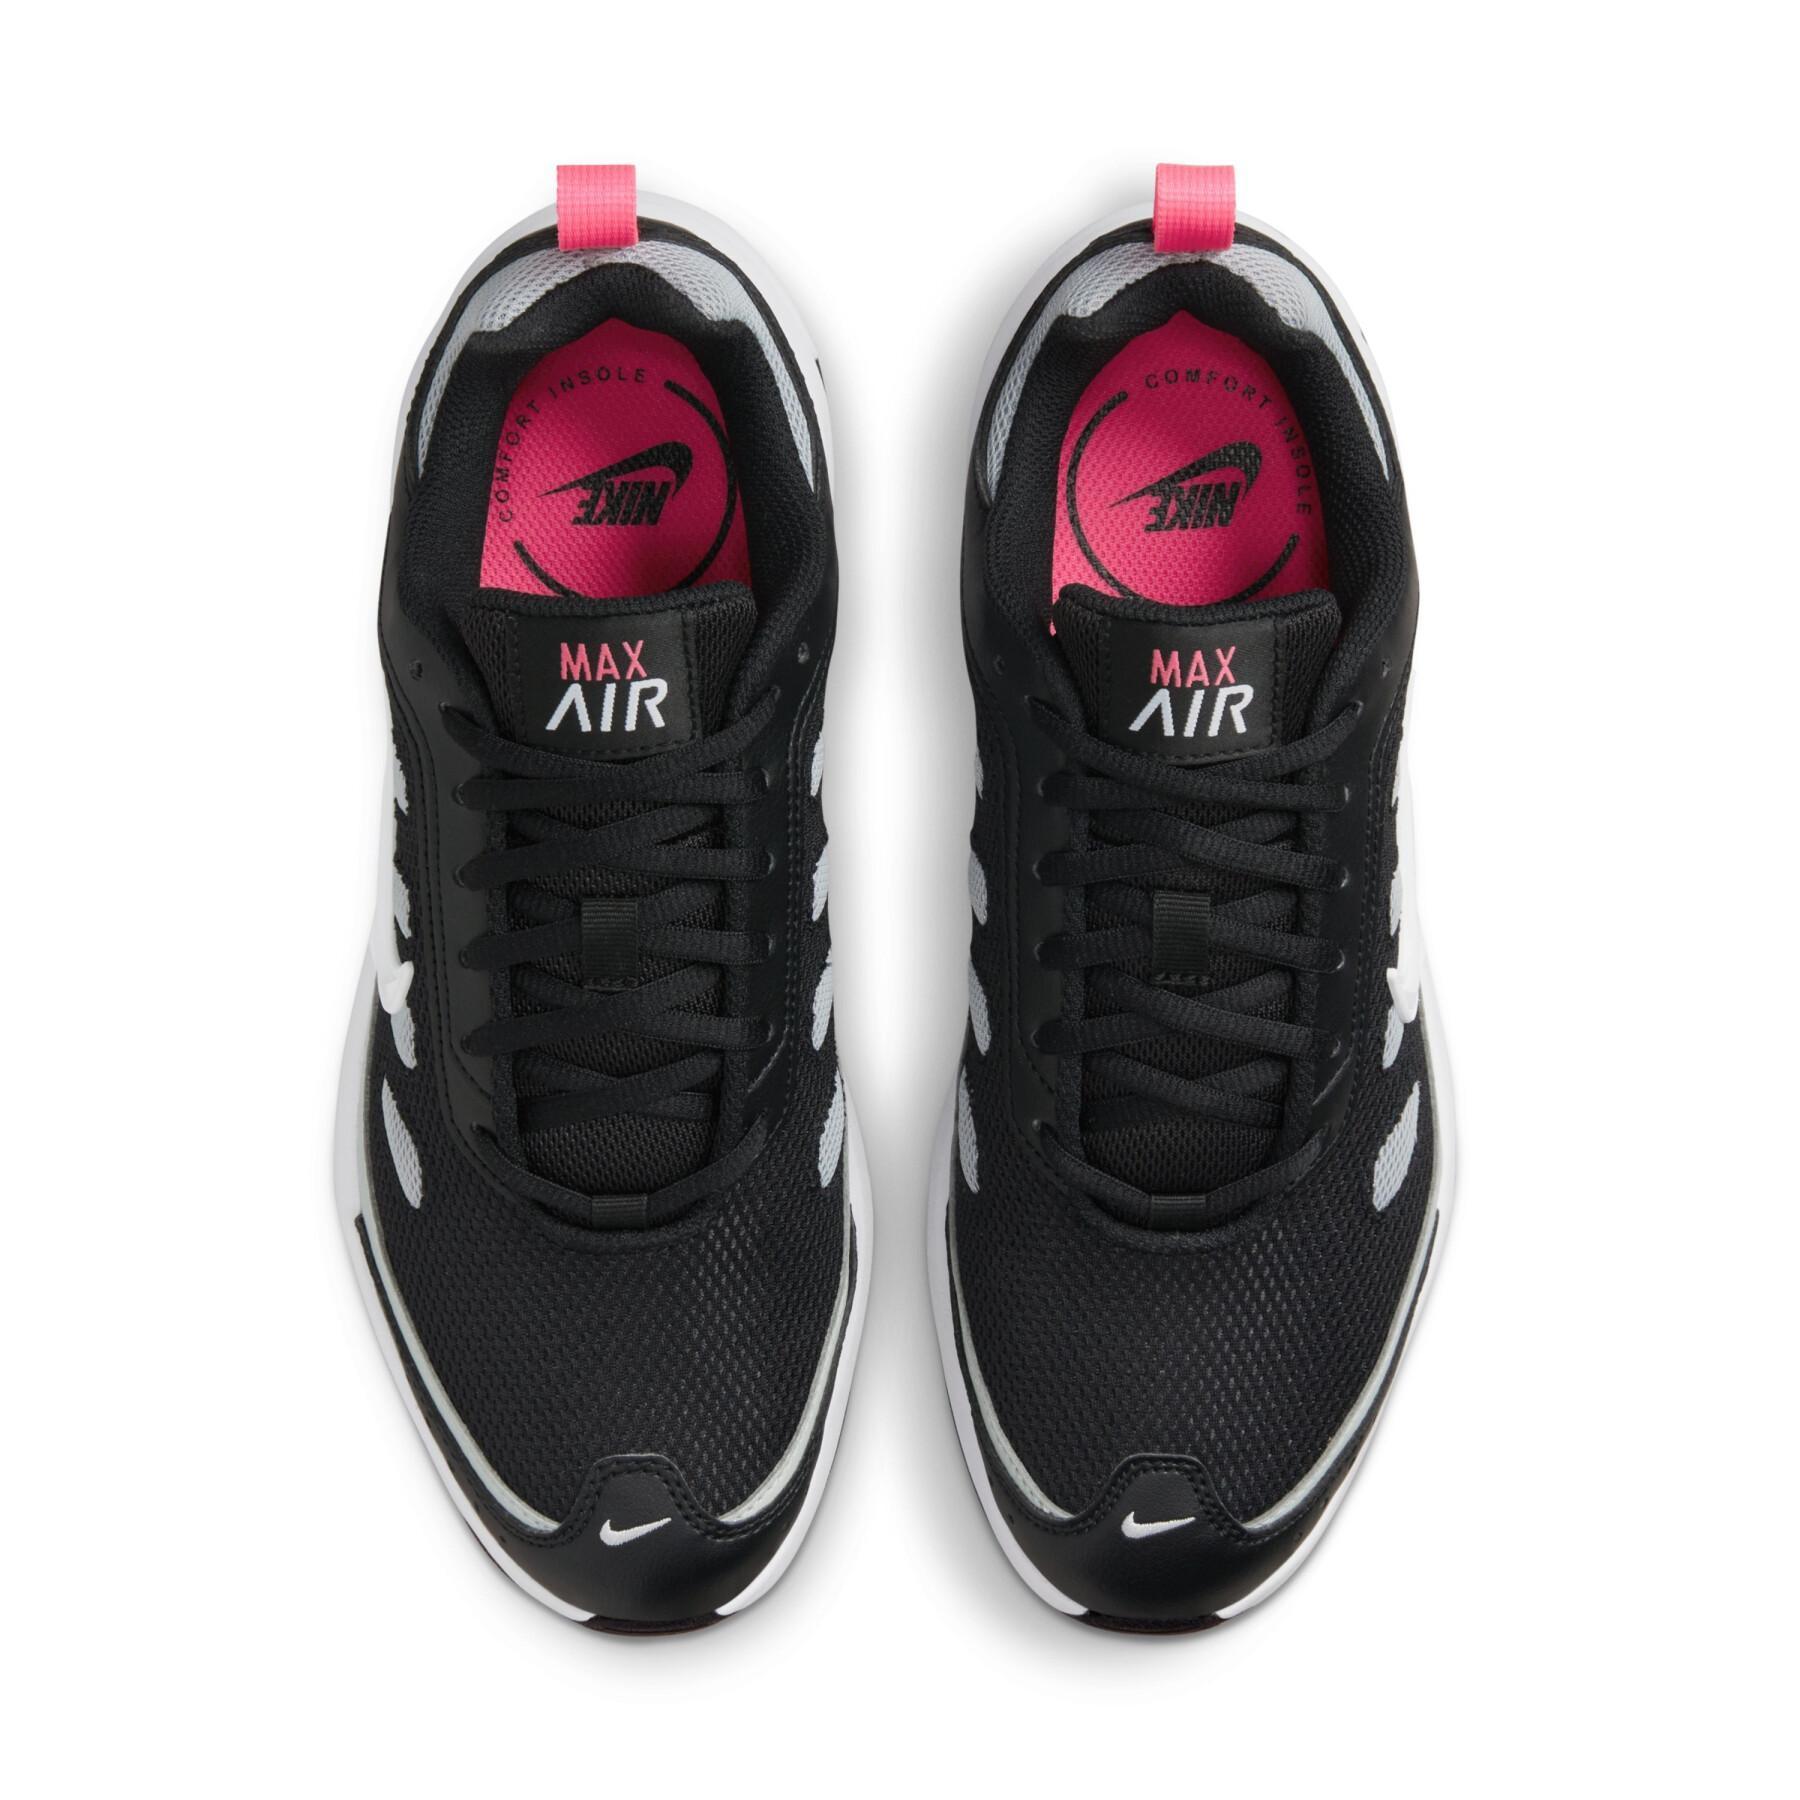 Women's sneakers Nike Air Max Ap